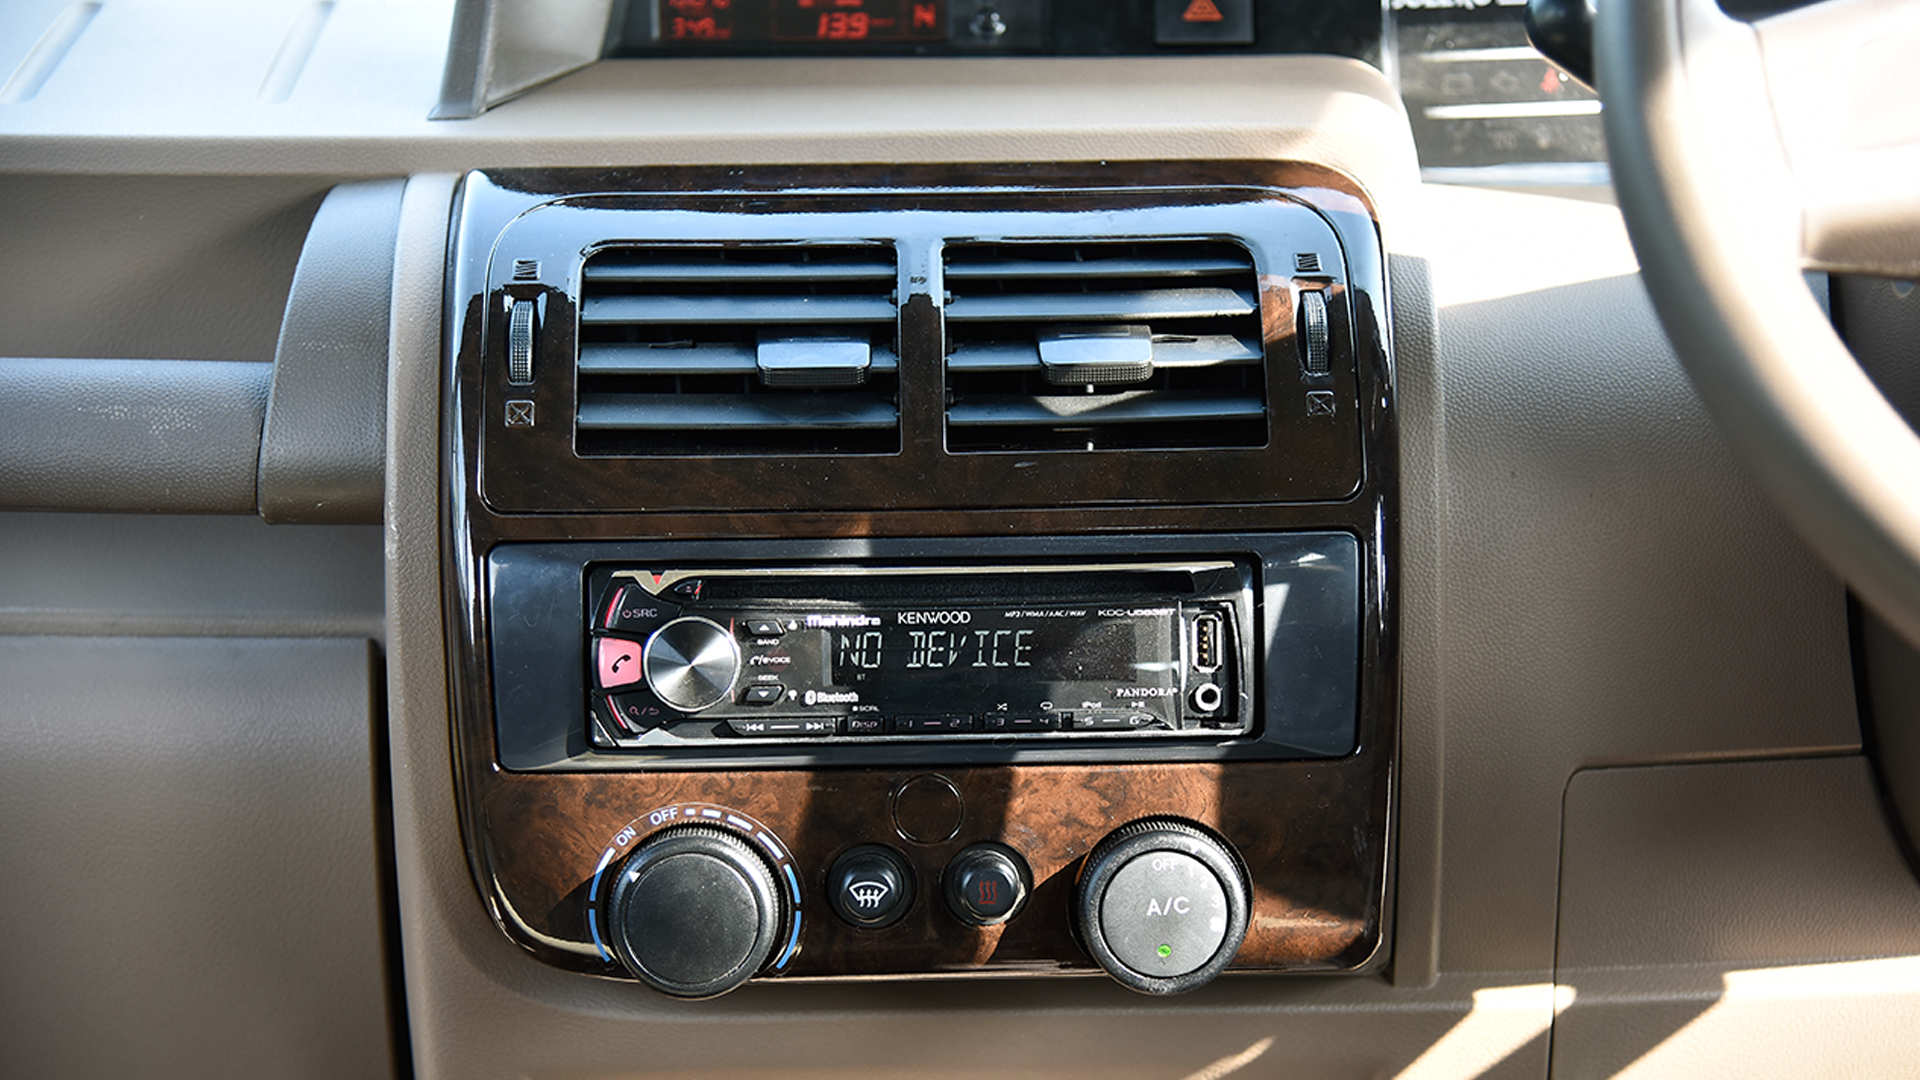 Mahindra Bolero 2016 Power Sle Interior Car Photos Overdrive